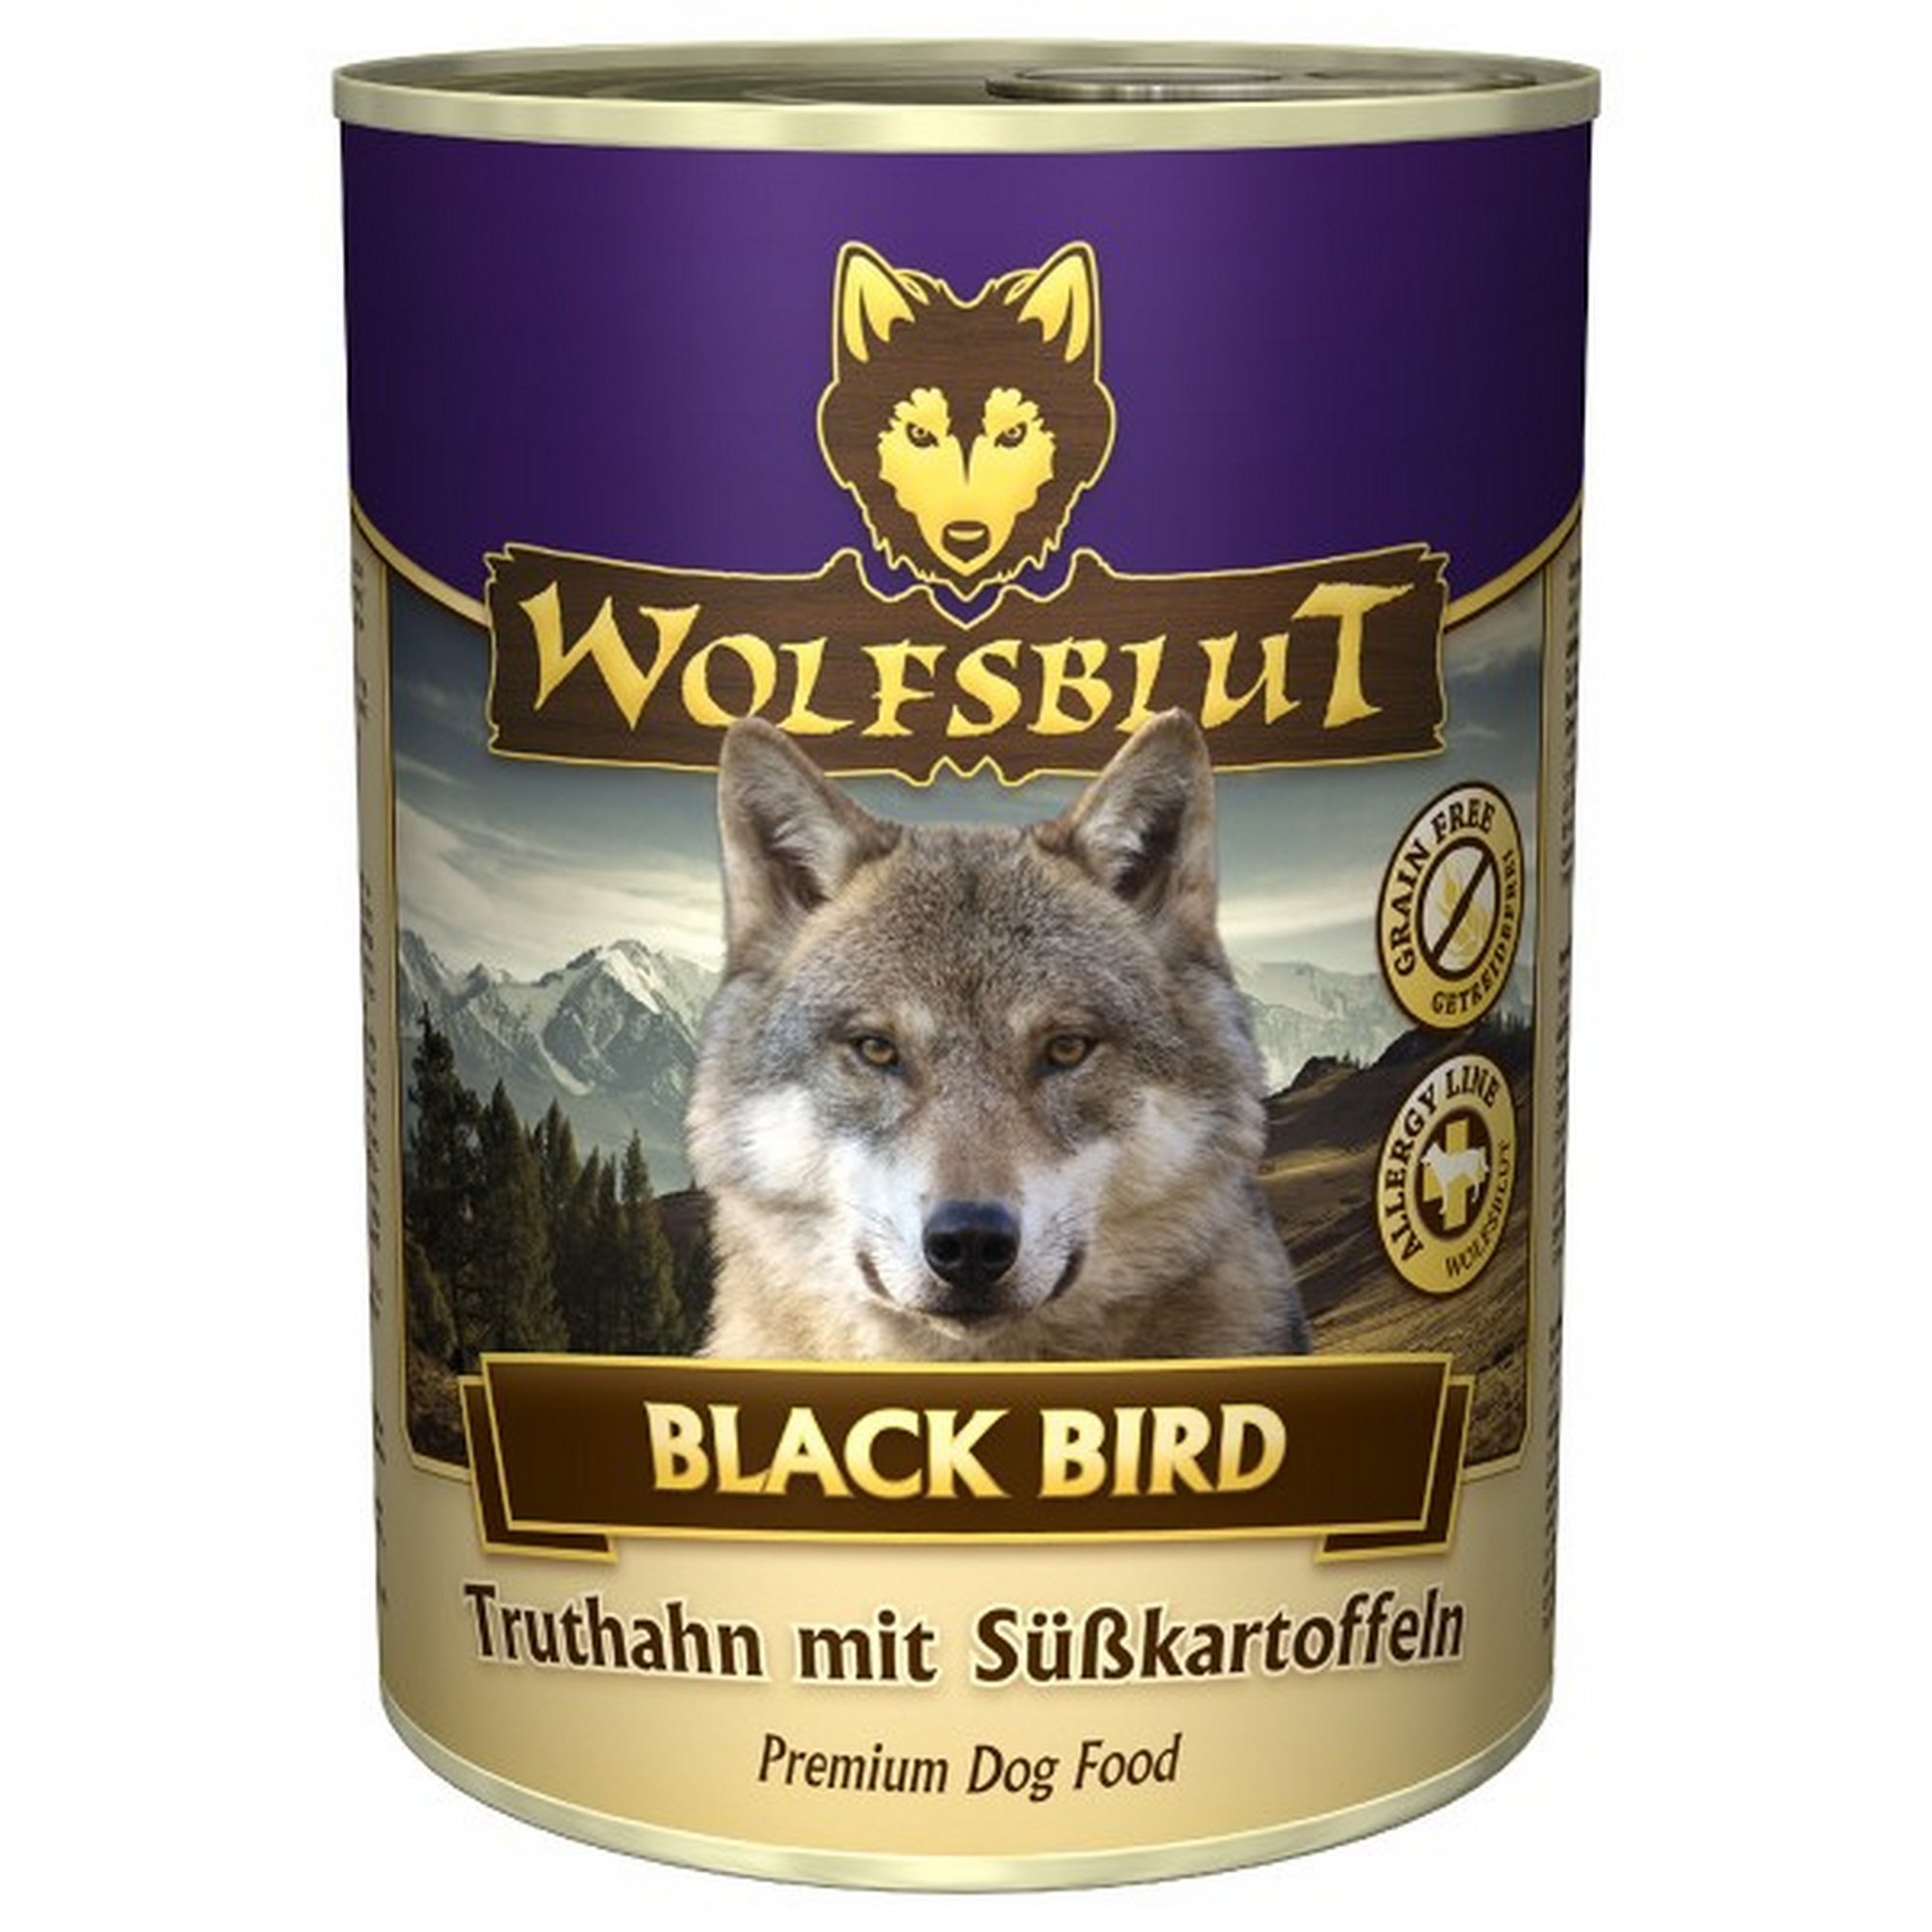 Hundenassfutter 'Black Bird' Adult Truthahn und Süßkartoffel 395 g + product picture